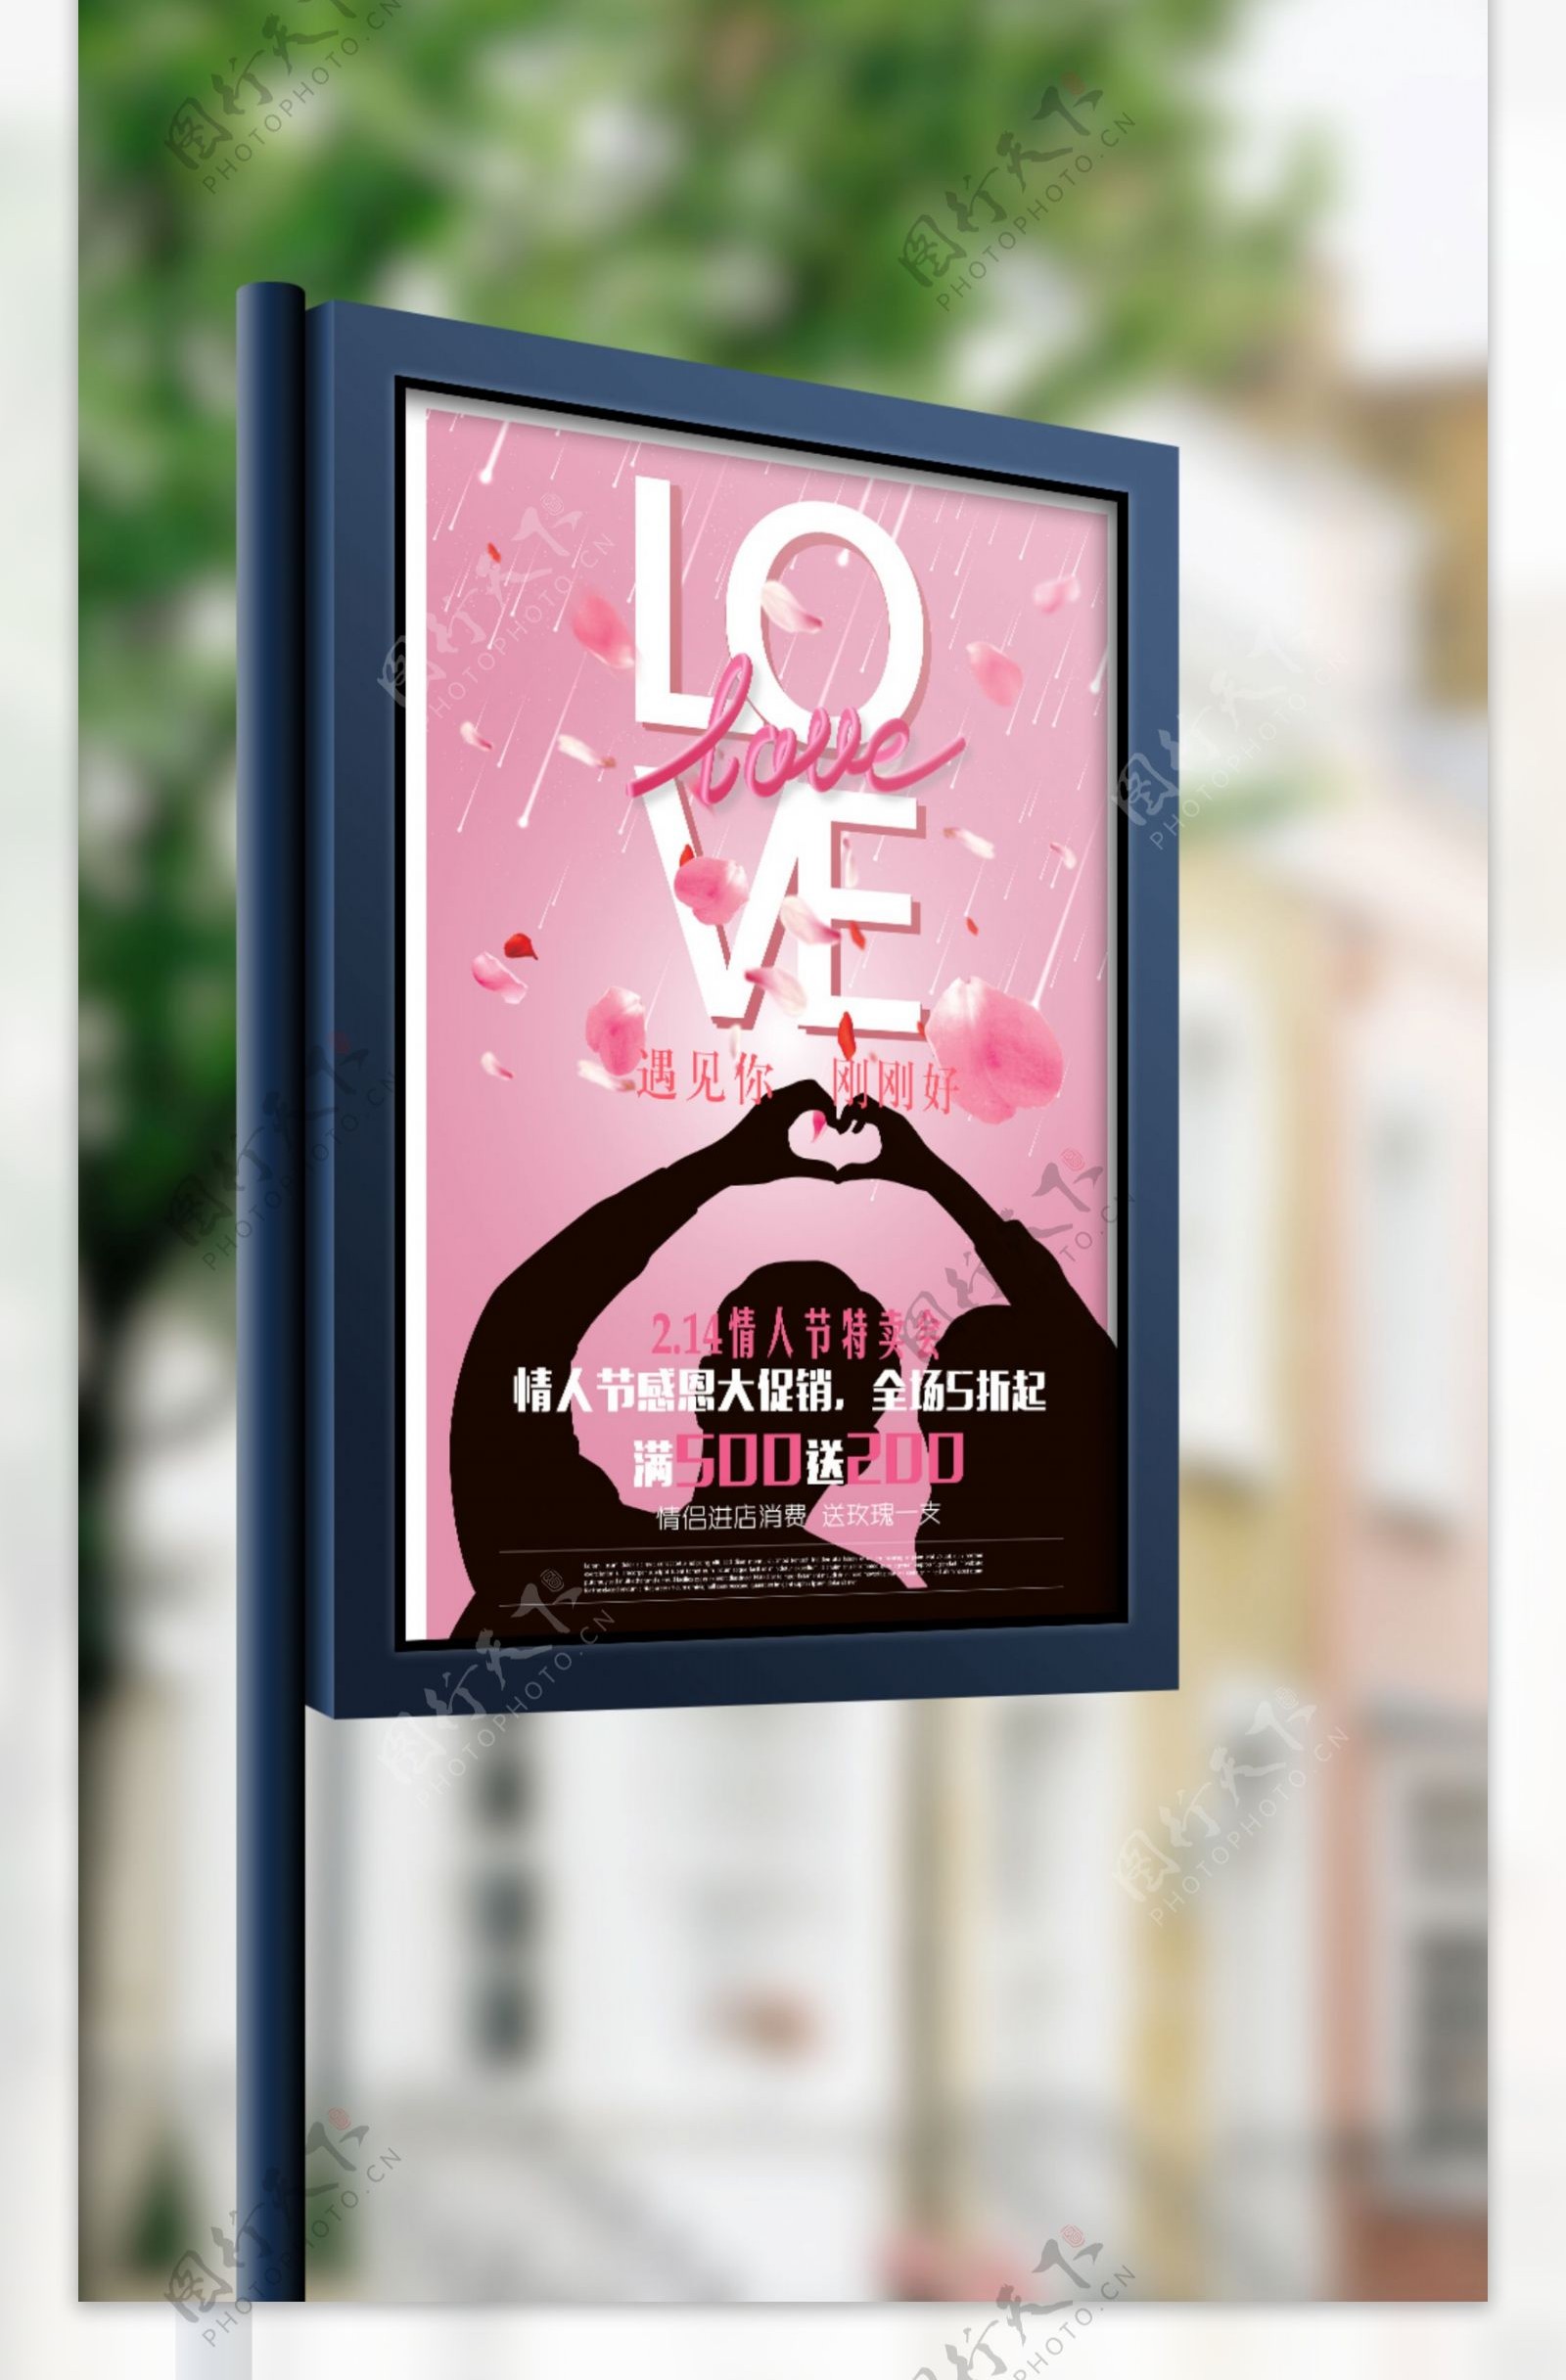 浪漫粉色玫瑰情人节矢量海报模板